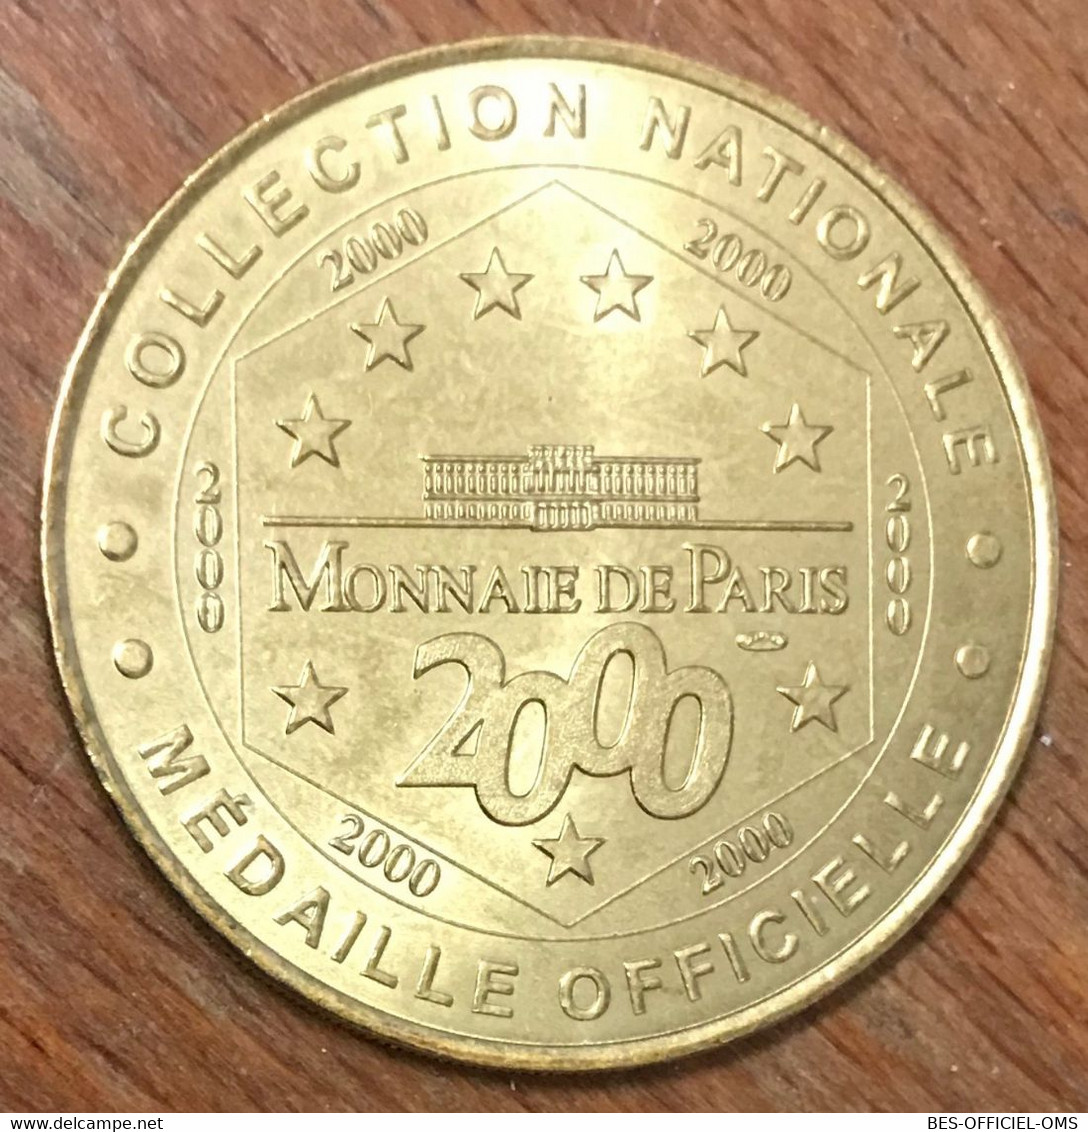 64 CHÂTEAU DE PAU MDP 2000 MÉDAILLE SOUVENIR MONNAIE DE PARIS JETON TOURISTIQUE MEDALS COINS TOKENS - 2000